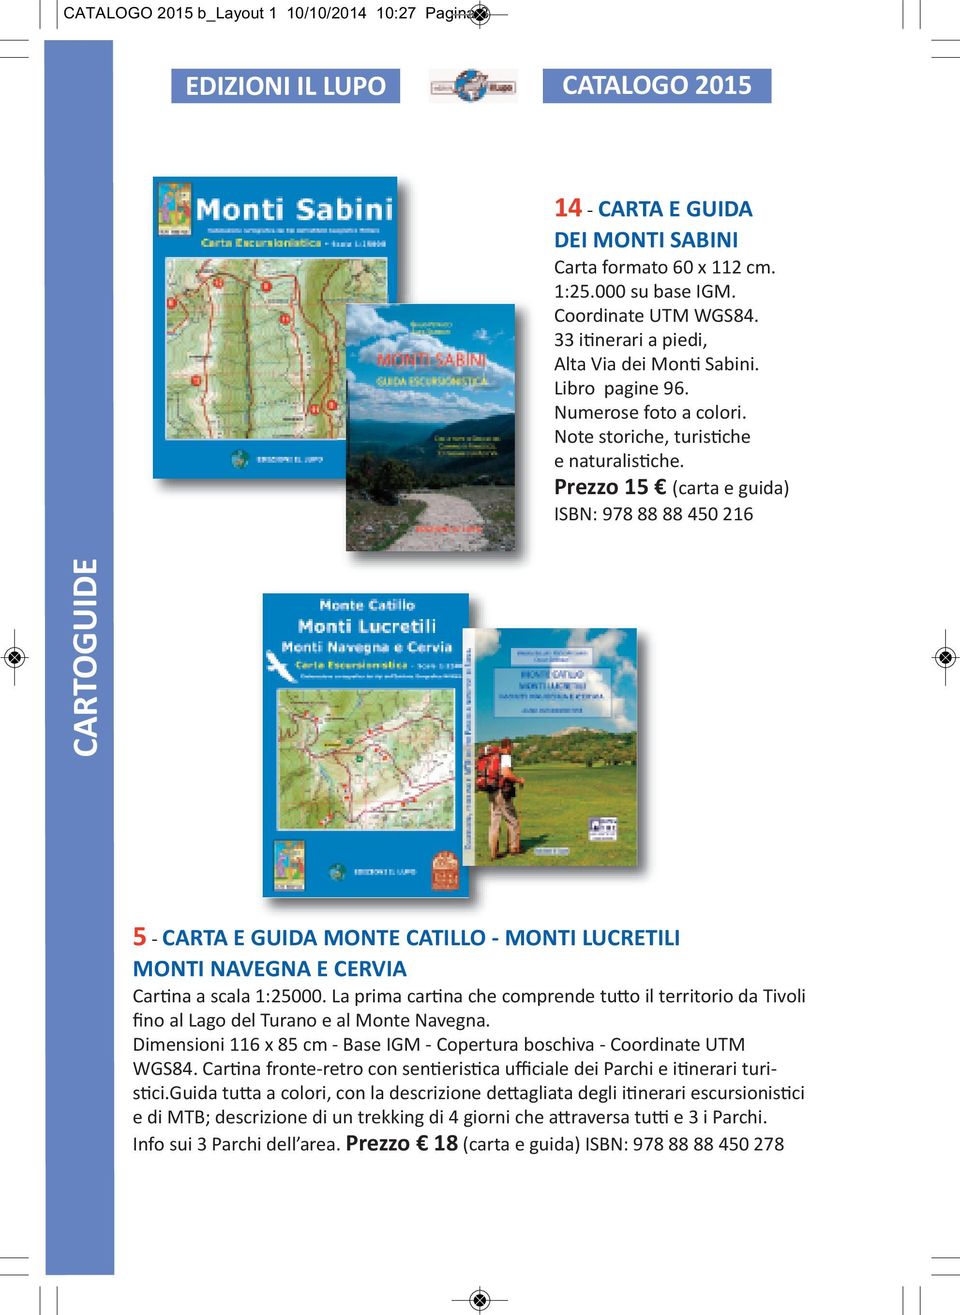 Prezzo 15 (carta e guida) ISBN: 978 88 88 450 216 5 - CARTA E GUIDA MONTE CATILLO - MONTI LUCRETILI MONTI NAVEGNA E CERVIA Cartina a scala 1:25000.